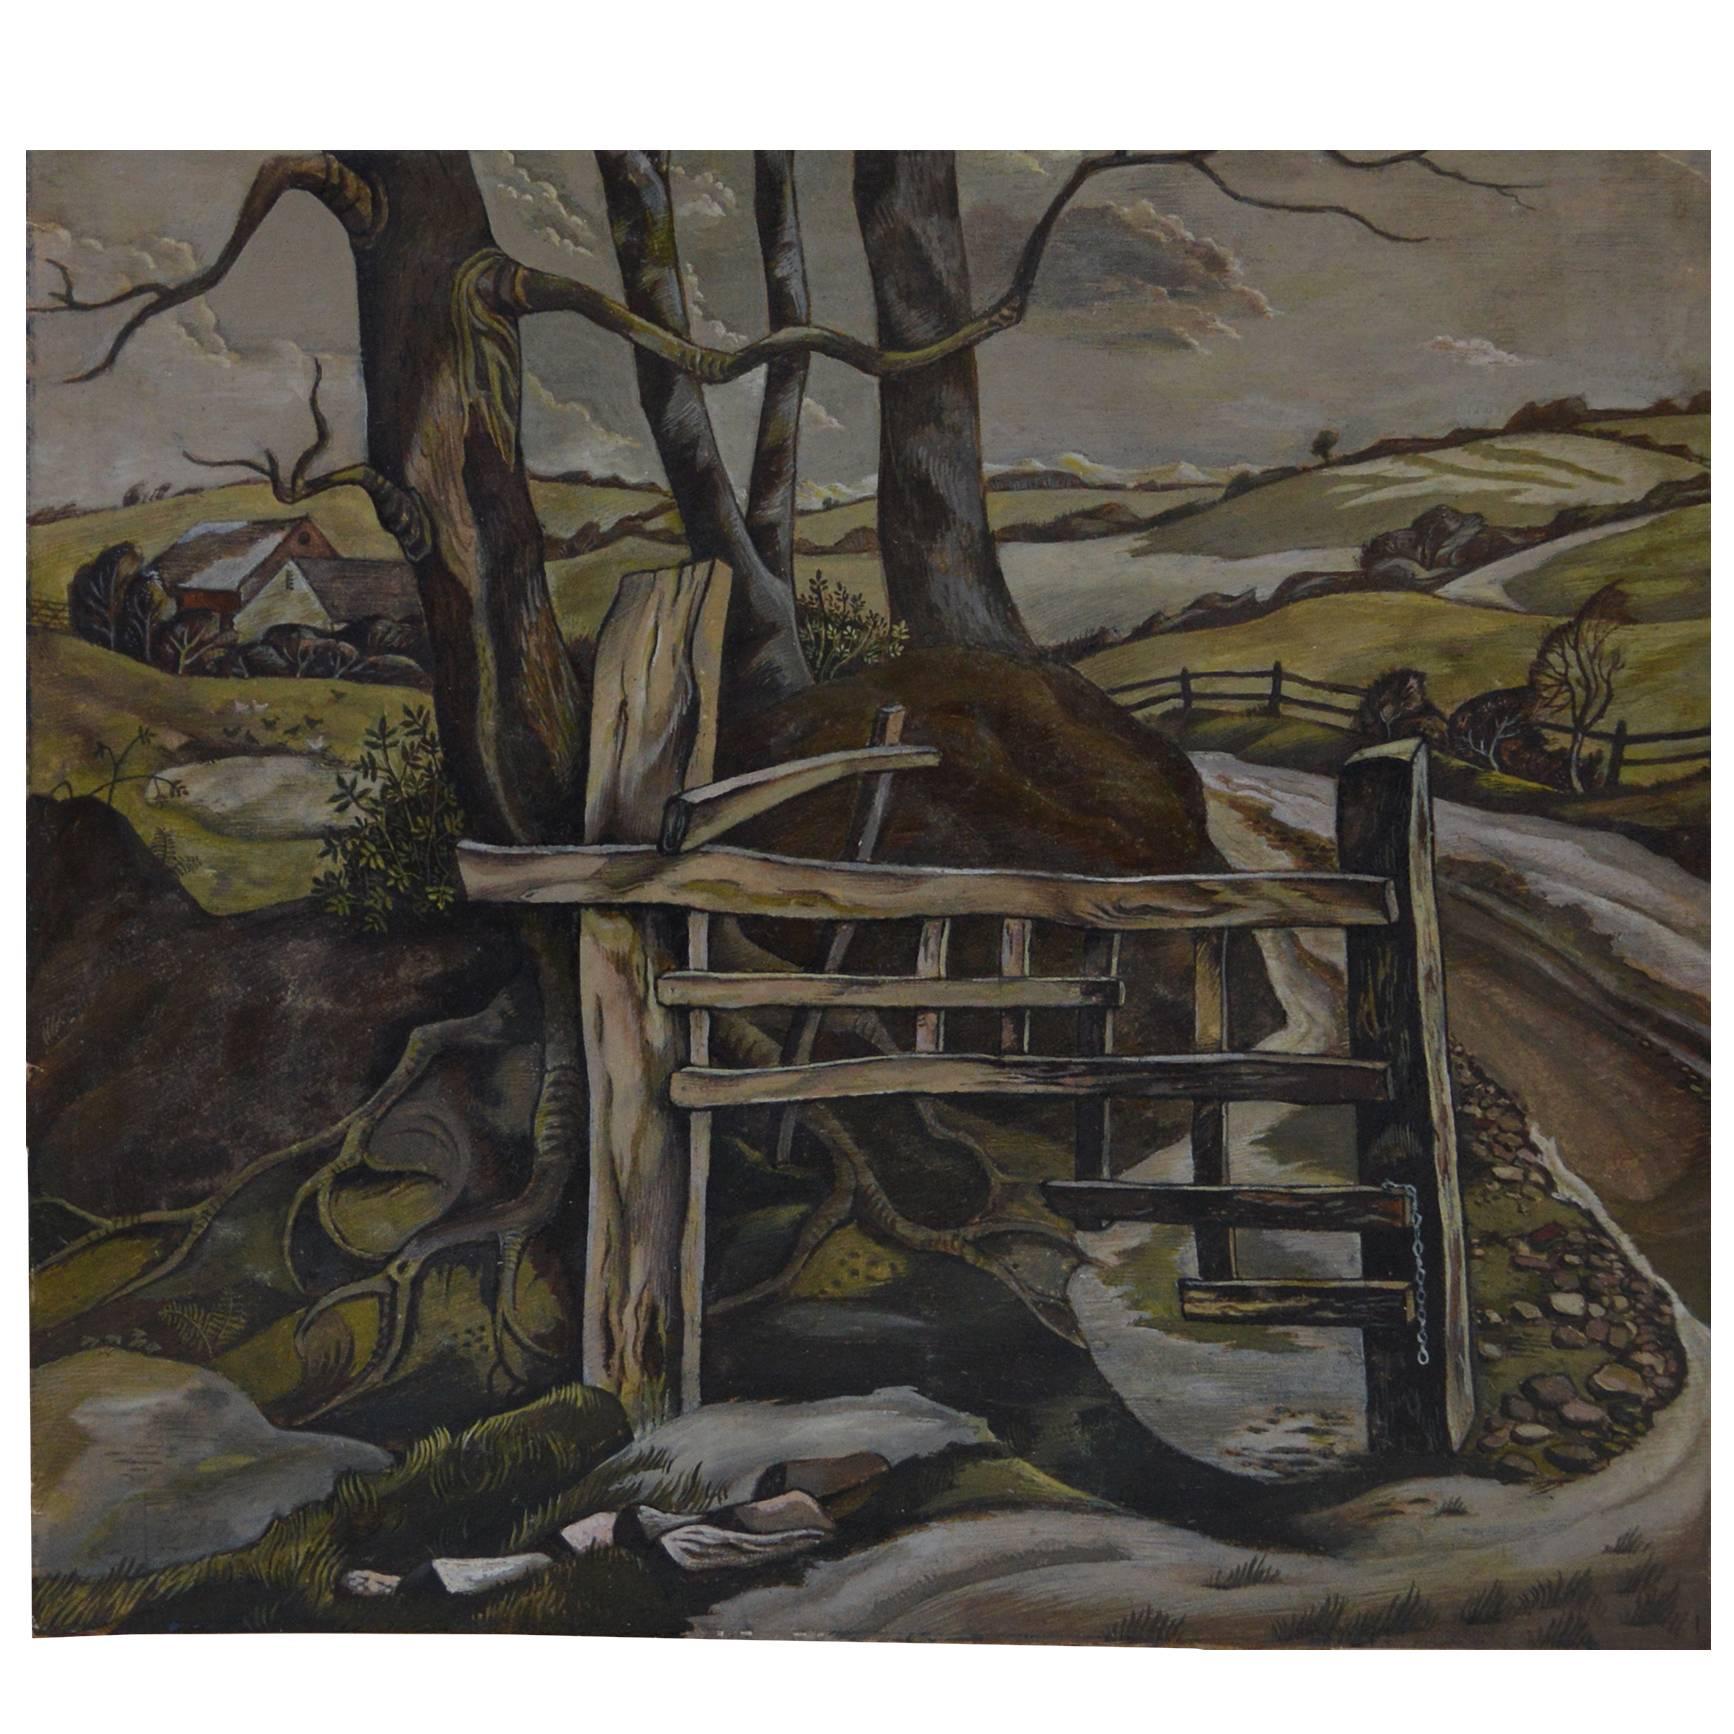 David Lord, Stylised English Landscape, 1947